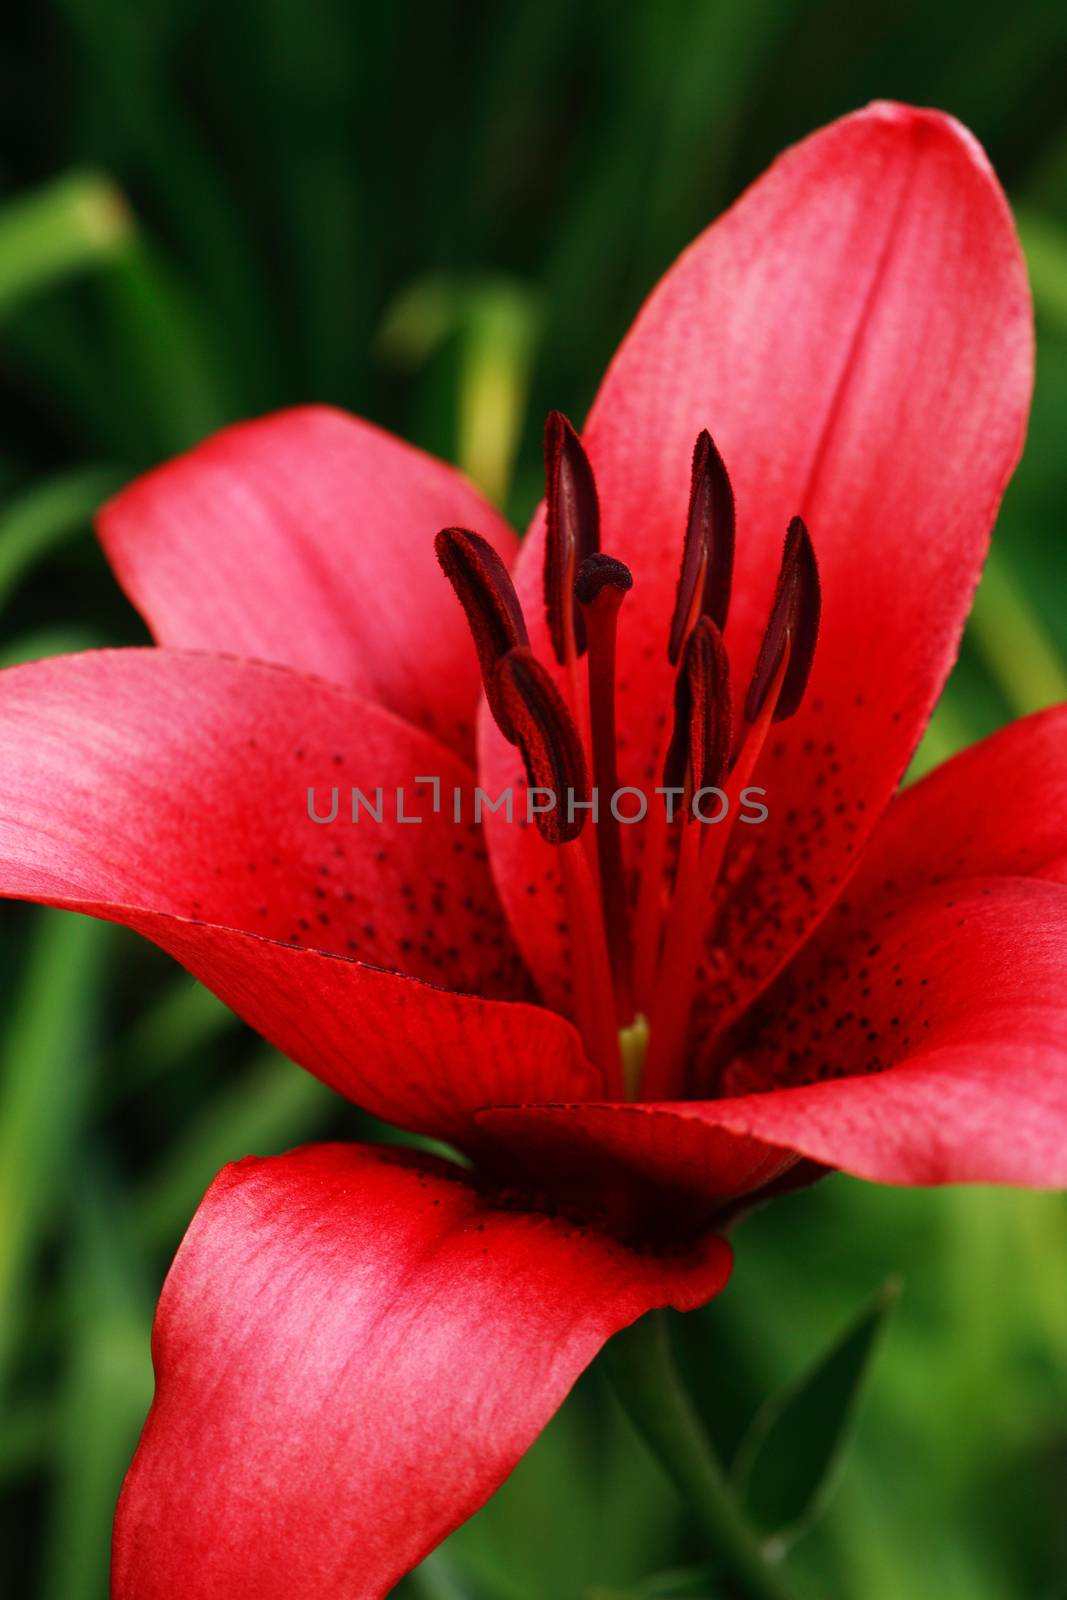 Red Lily In Garden by kvkirillov